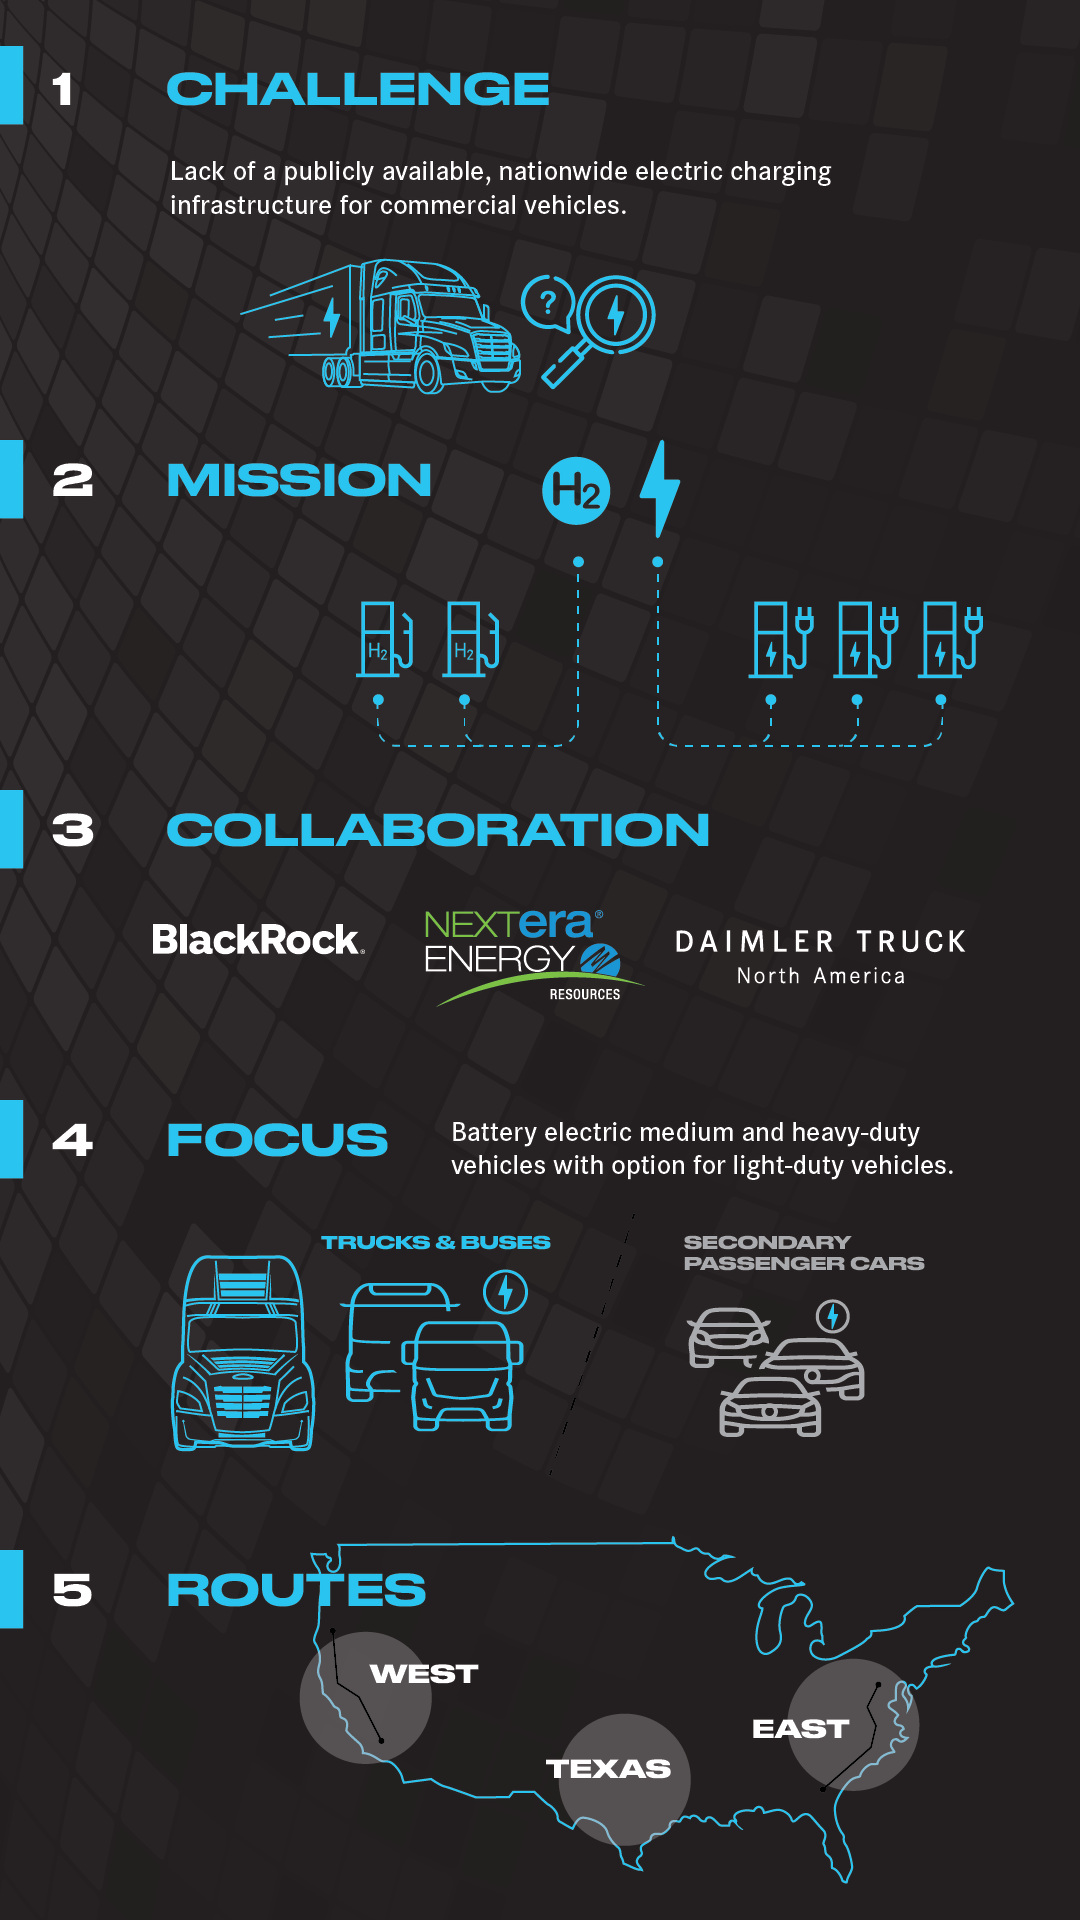 Daimler Truck North America, NextEra Energy Resources und BlackRock Renewable